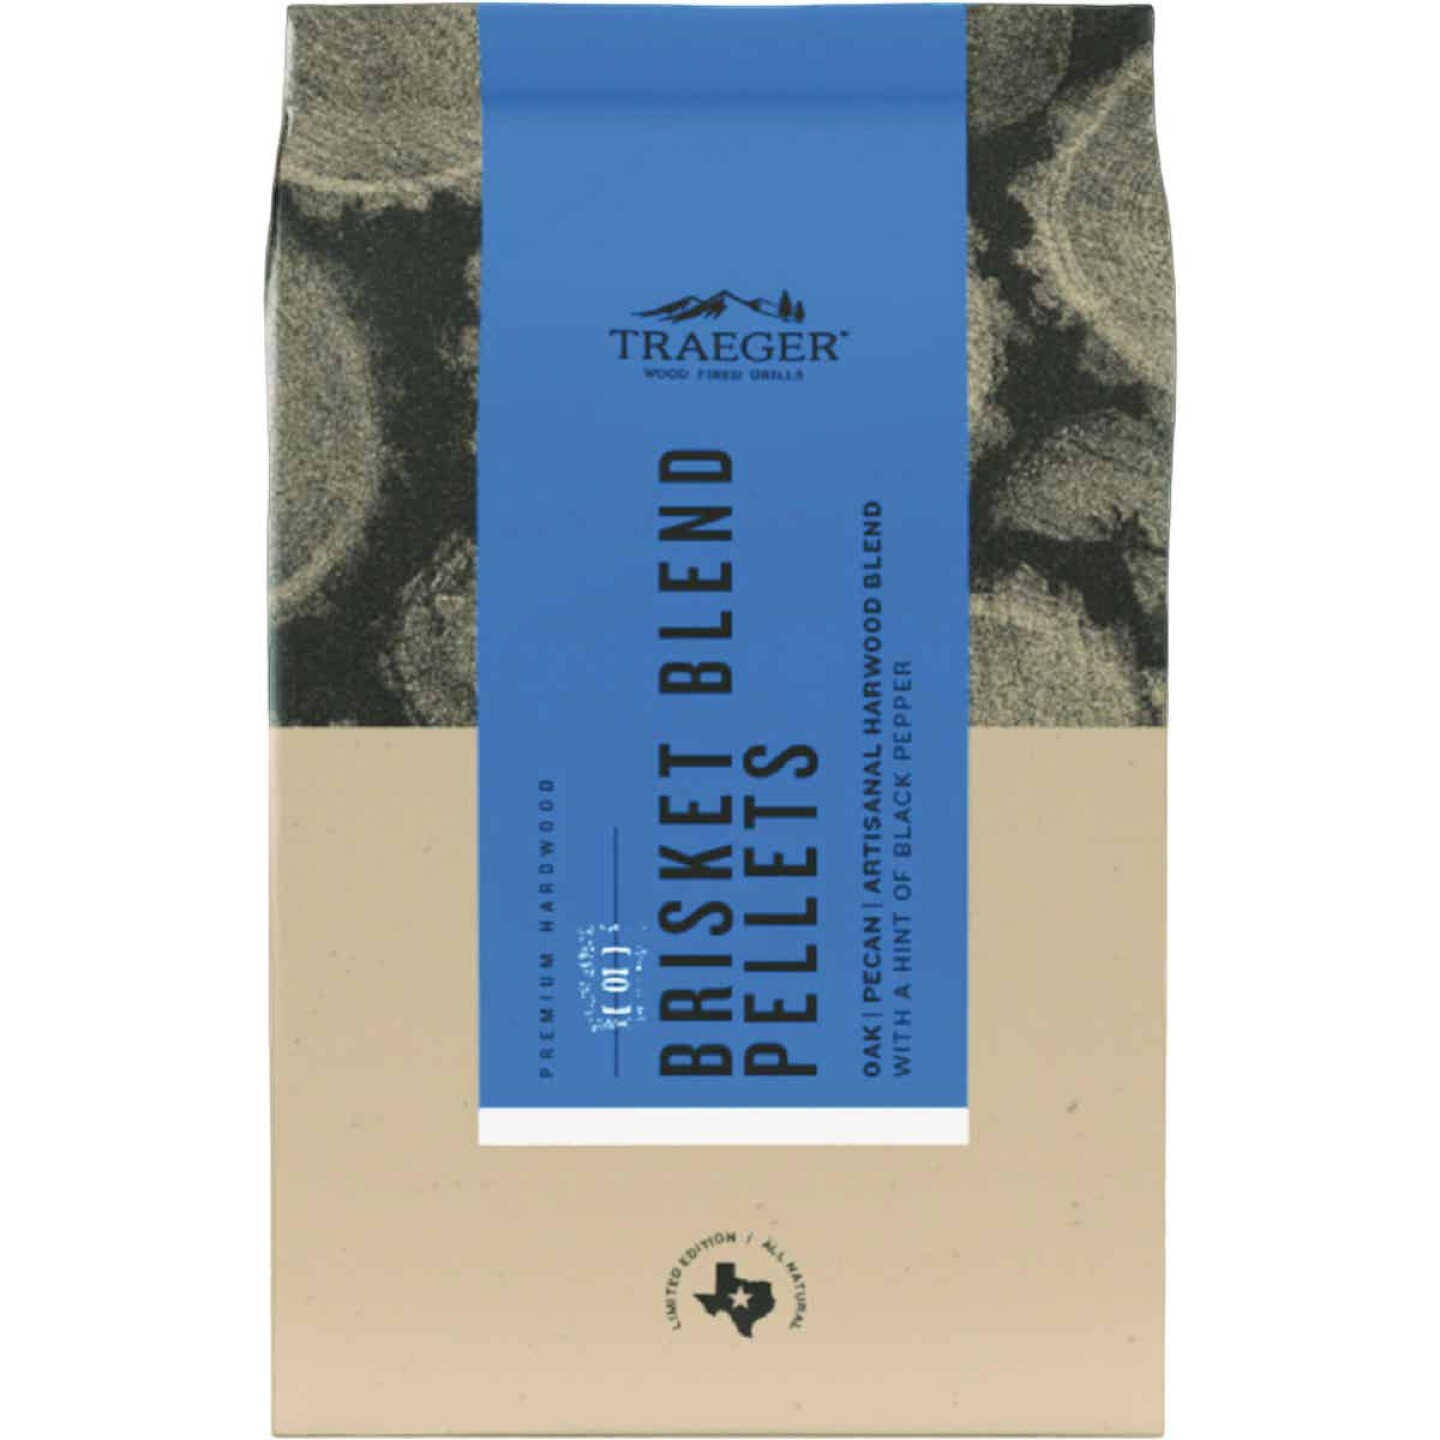 Traeger Brisket Blend Wood Pellets- Limited Edition